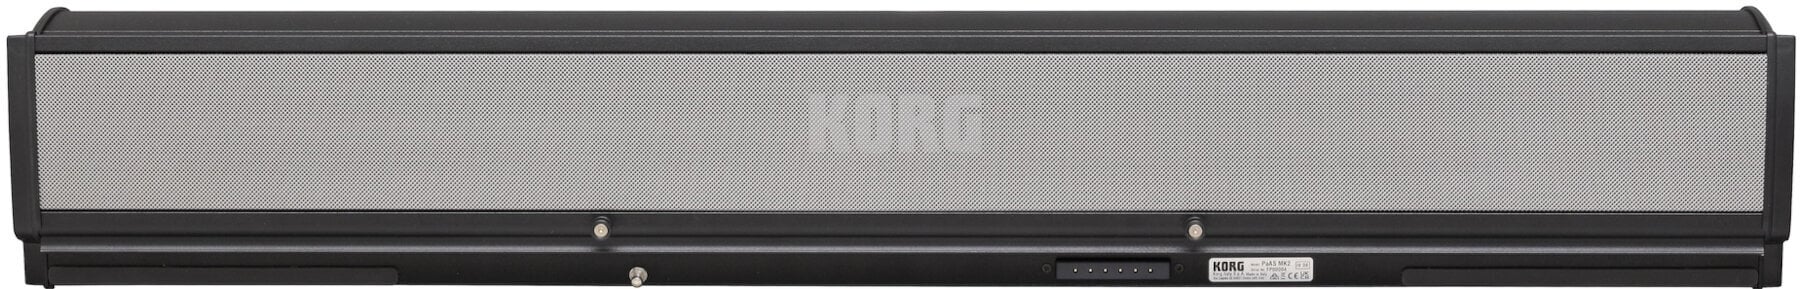 Geluidssysteem voor keyboard Korg PaAS MK2